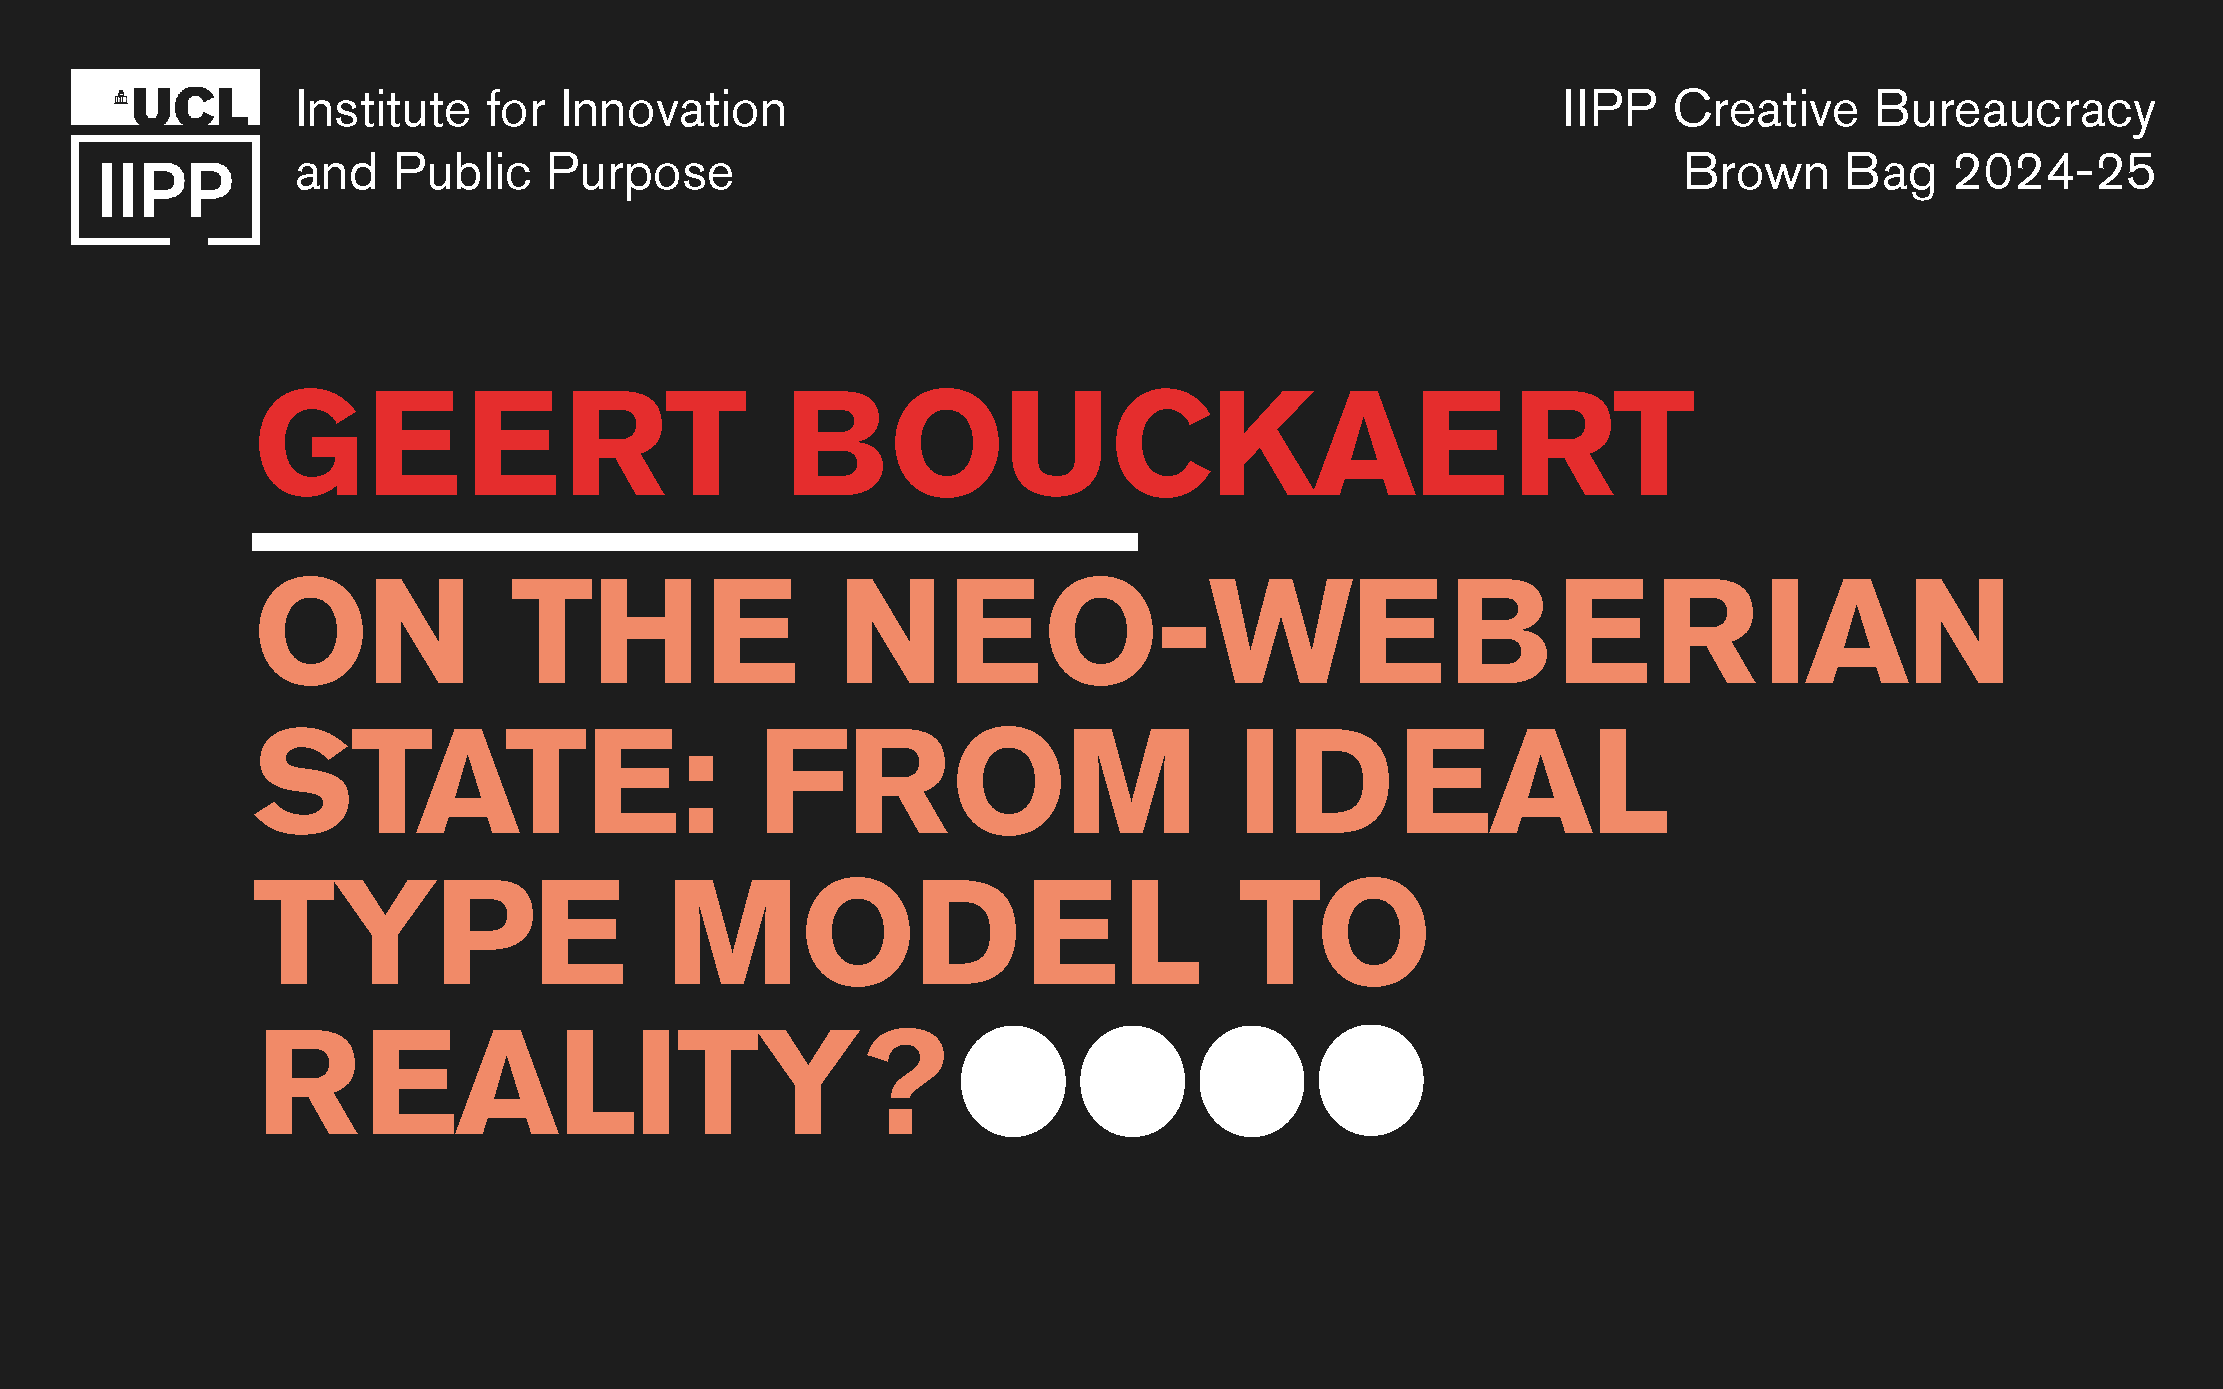 Geert Bouckaert on the Neo-Weberian State